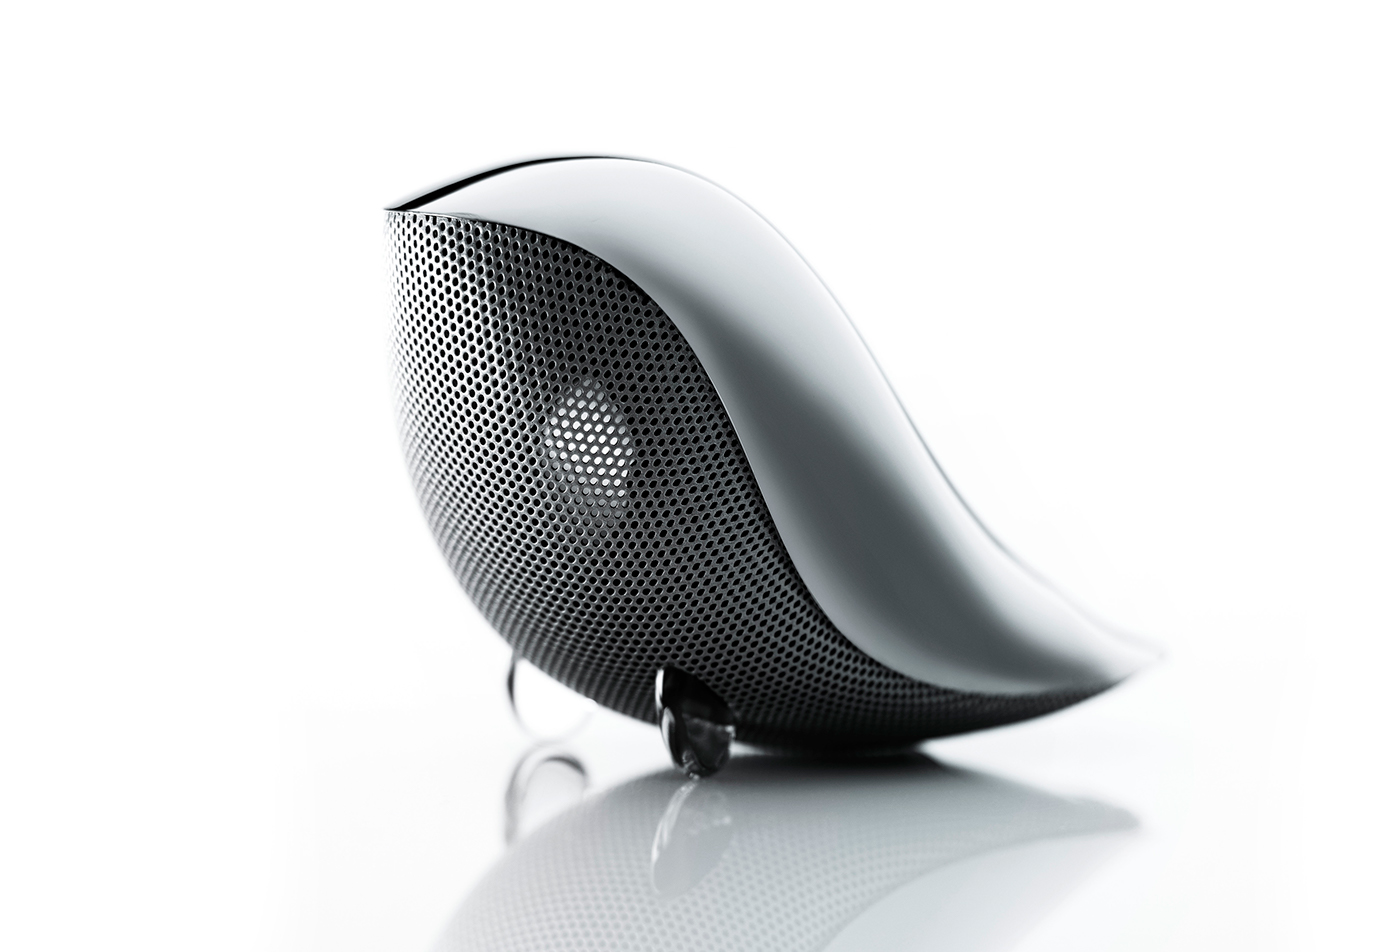 industrial design  product design  speaker design aesthetics creative Audio alvin tham CMF Design singapore